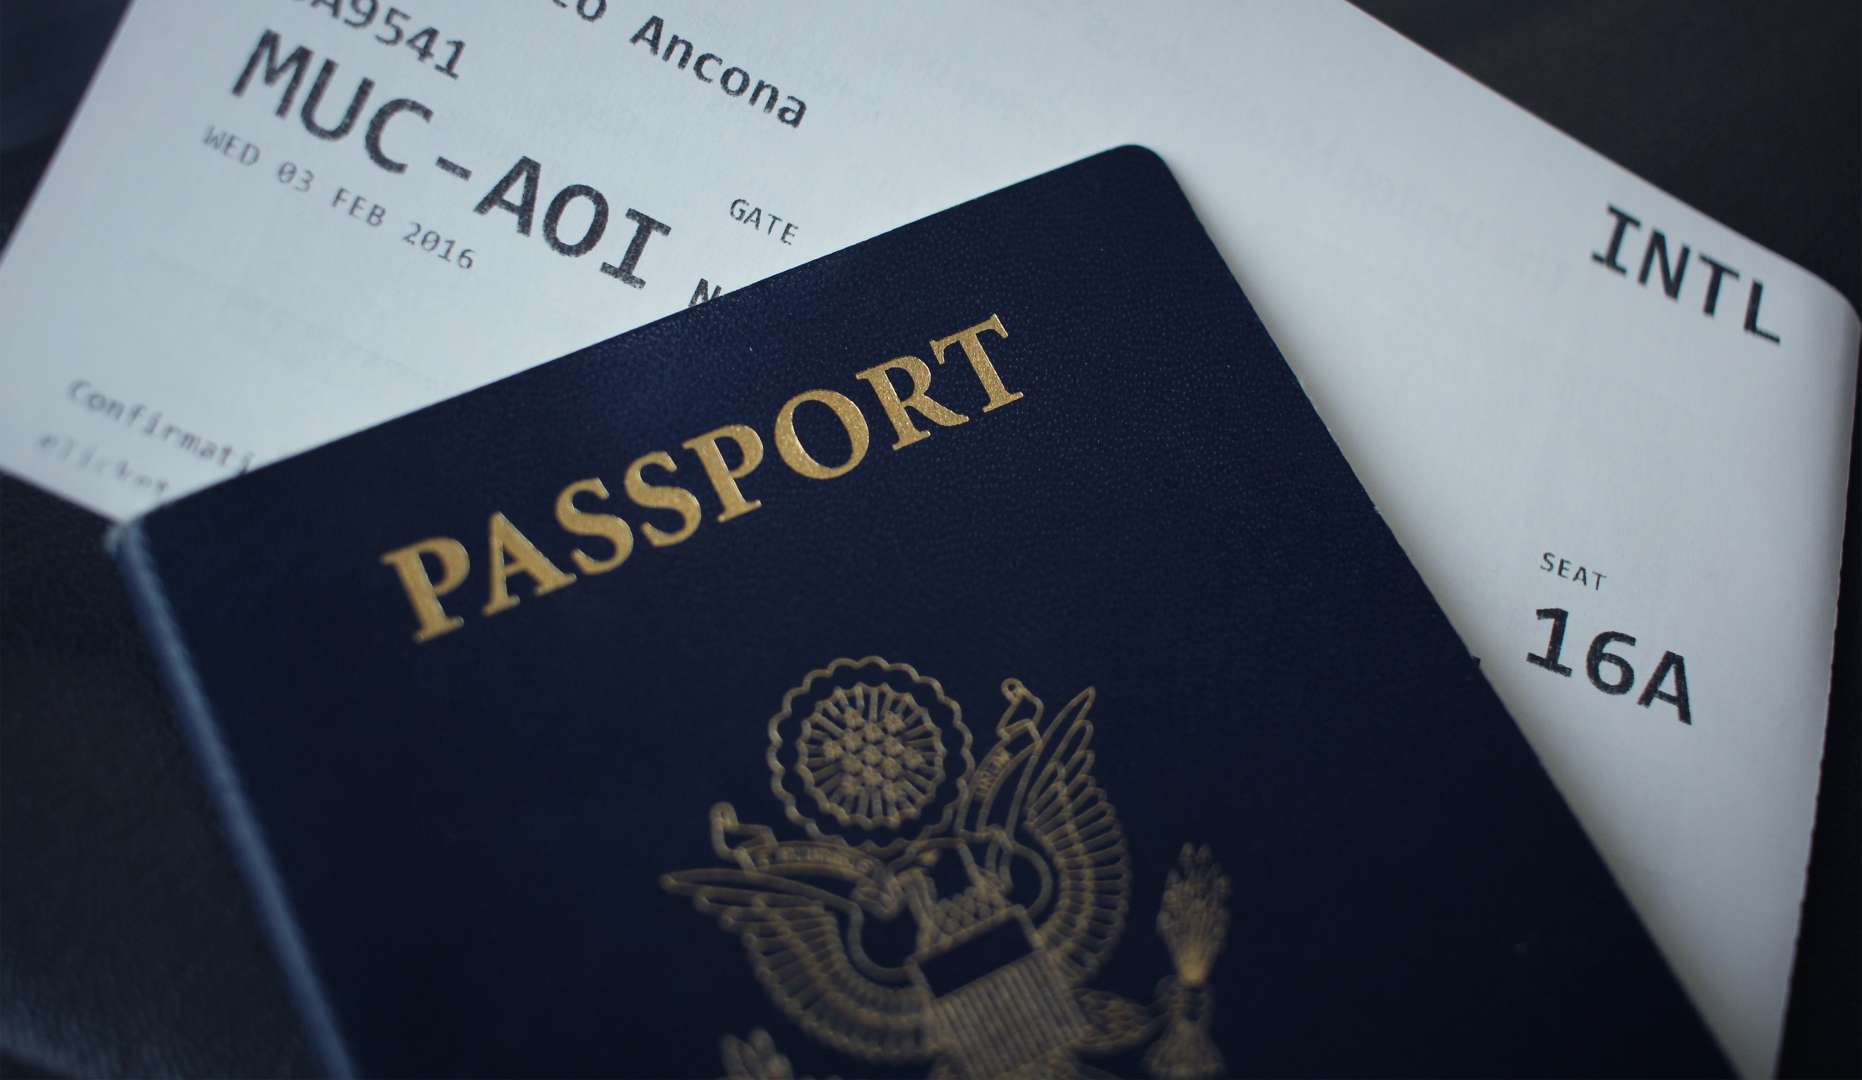 קורץ לכם דרכון פורטוגלי והאפשרויות שהוא פותח?